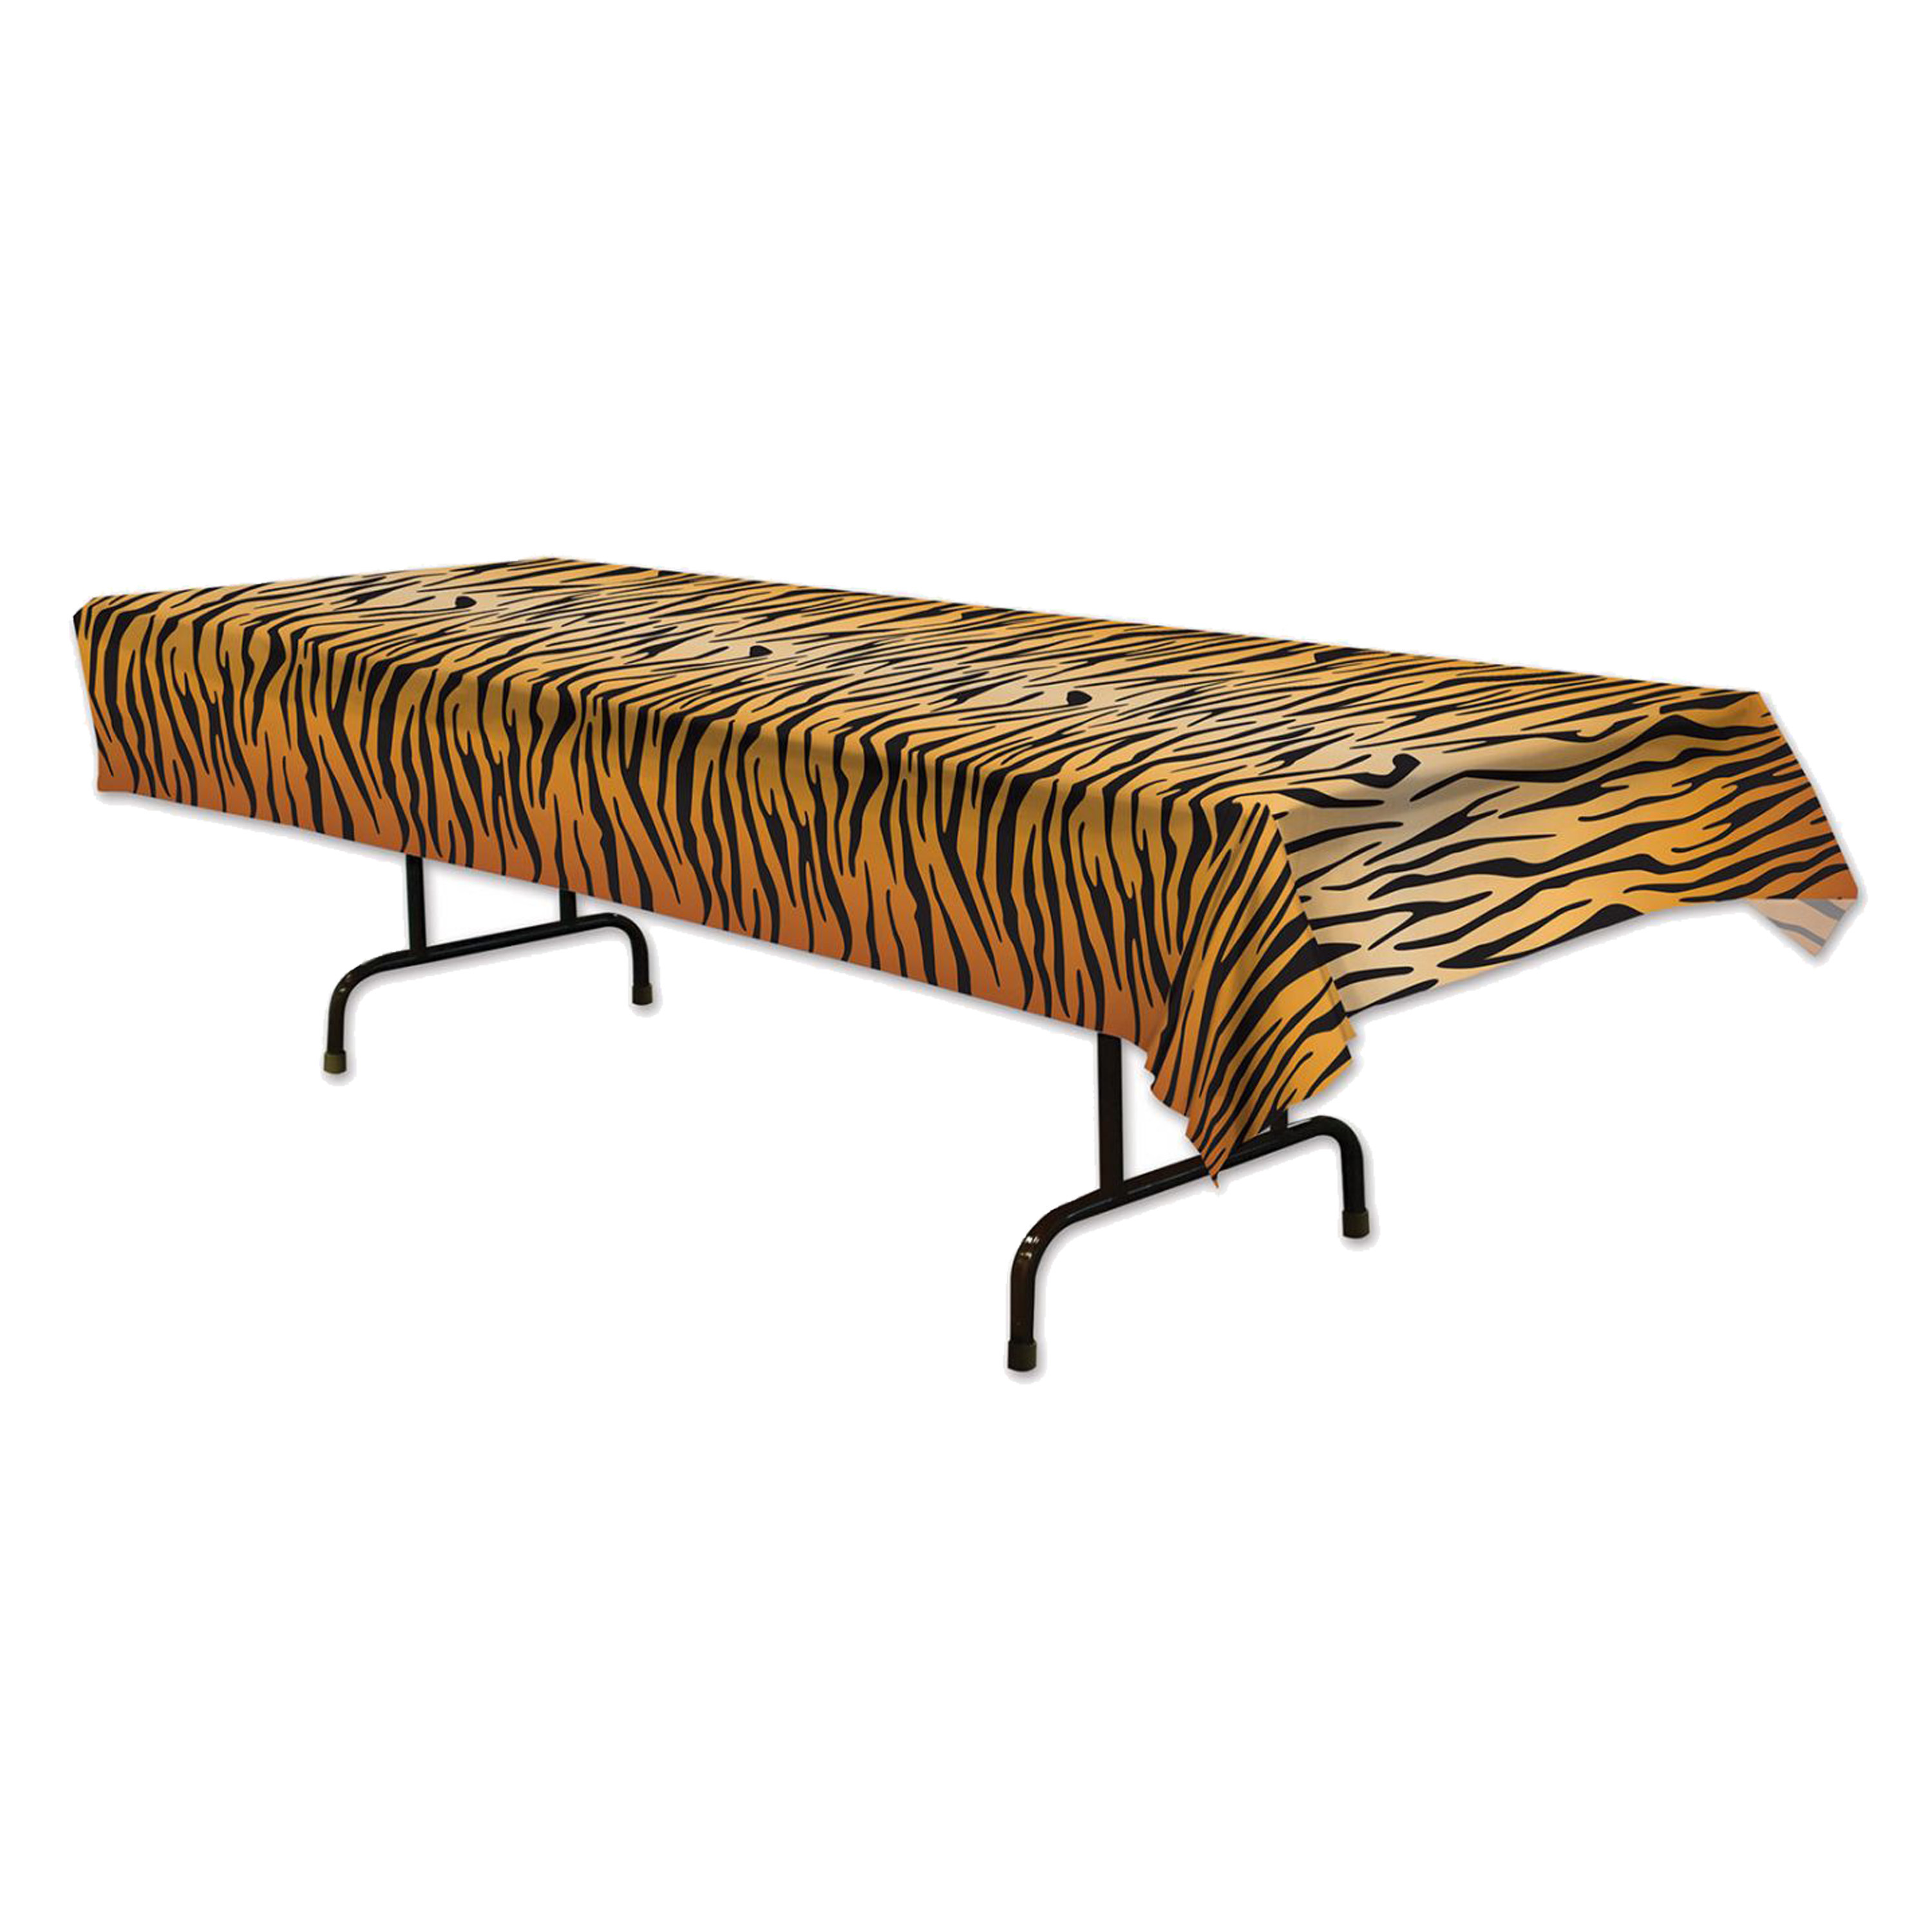 Tafellaken-tafelkleed tijger print 137 x 274 cm kunststof Jungle-dieren thema